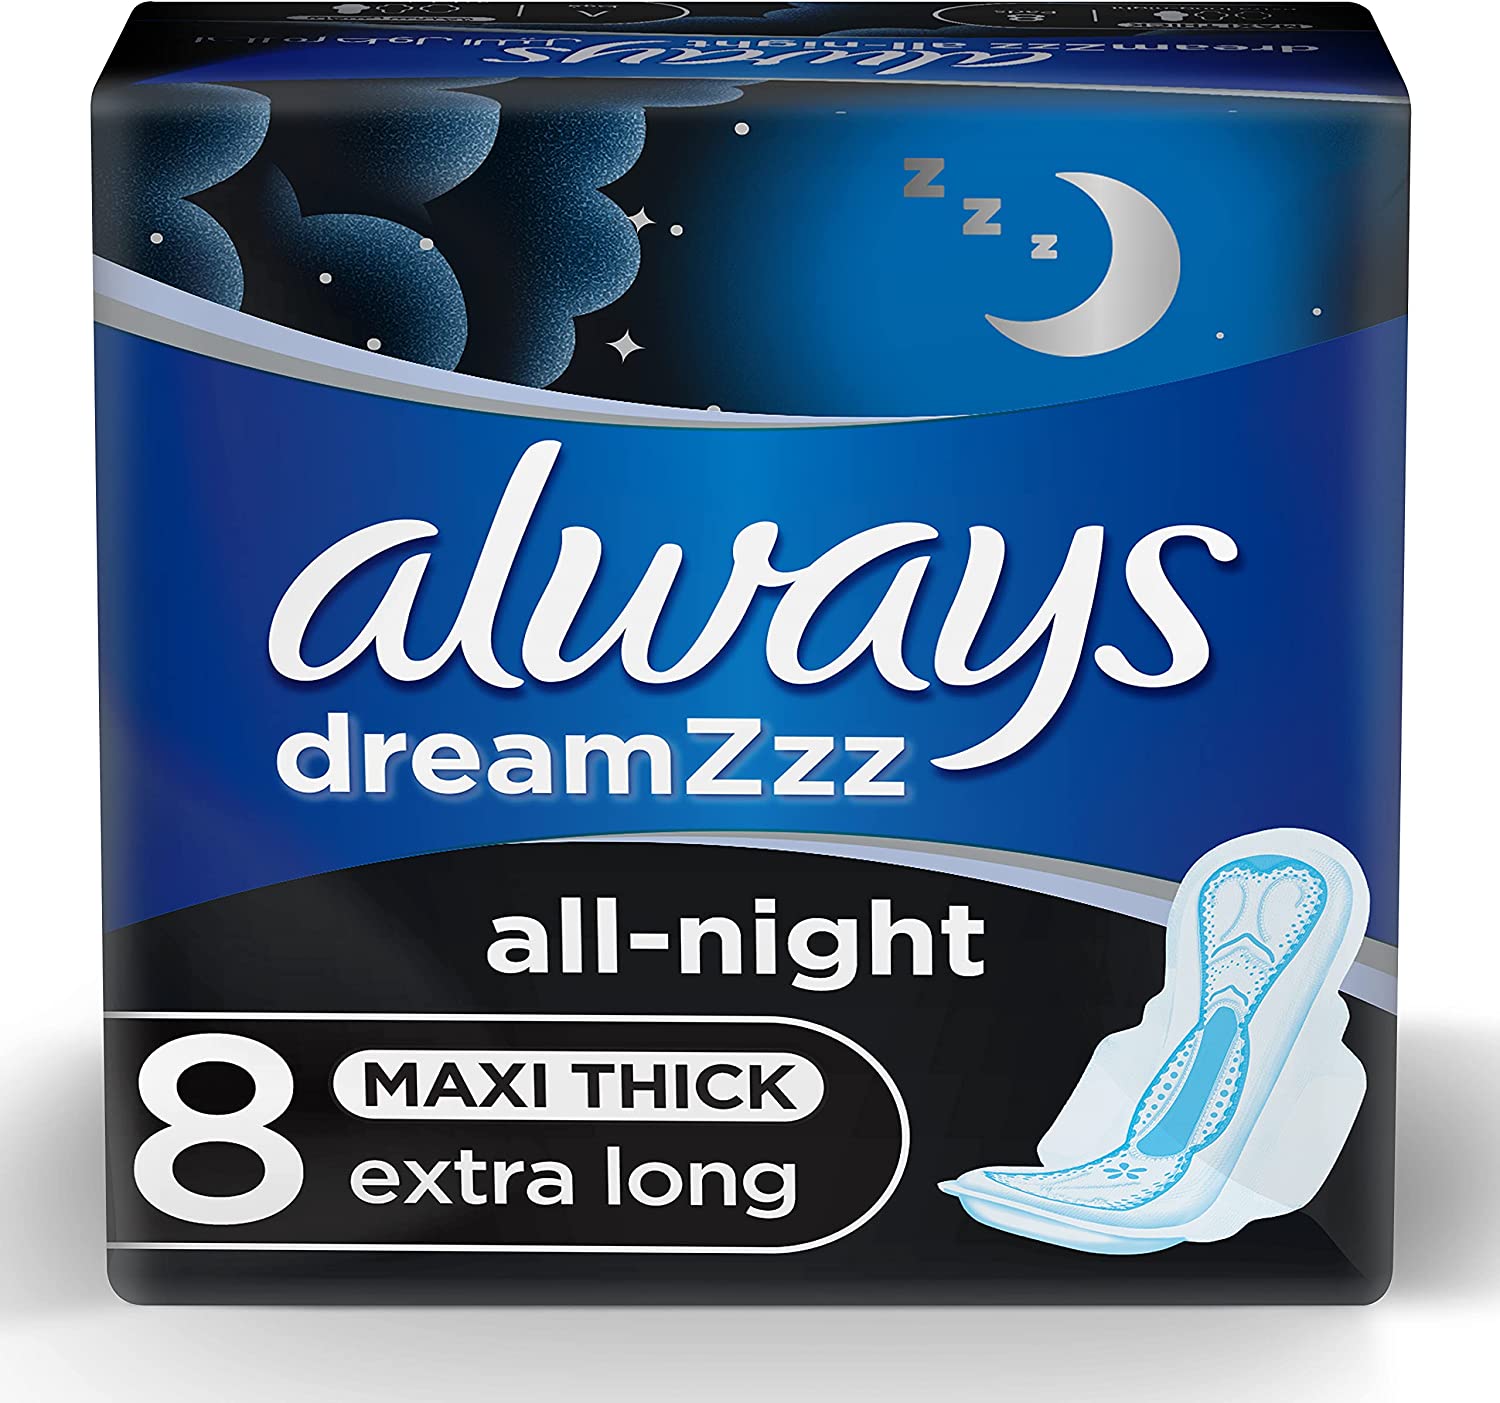 Always pads dreamzzz all night